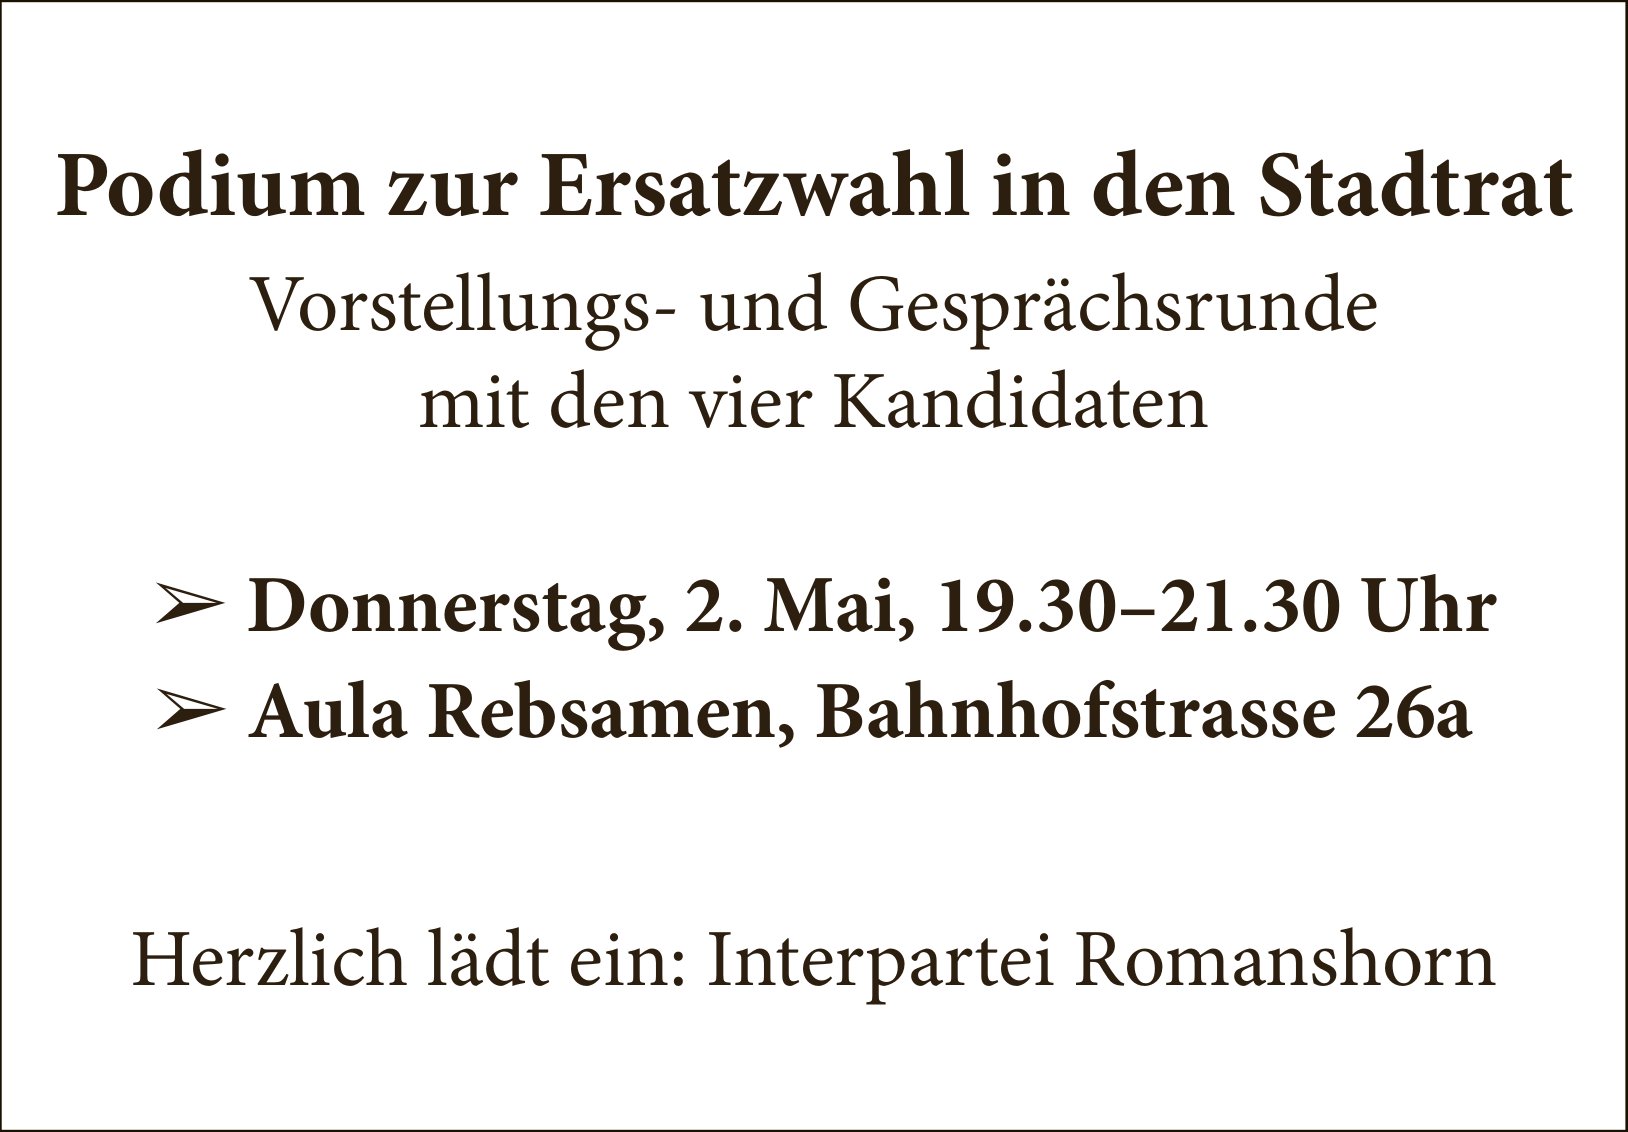 Romanshorn - Podium Zur Ersatzwahl In Den Stadtrat